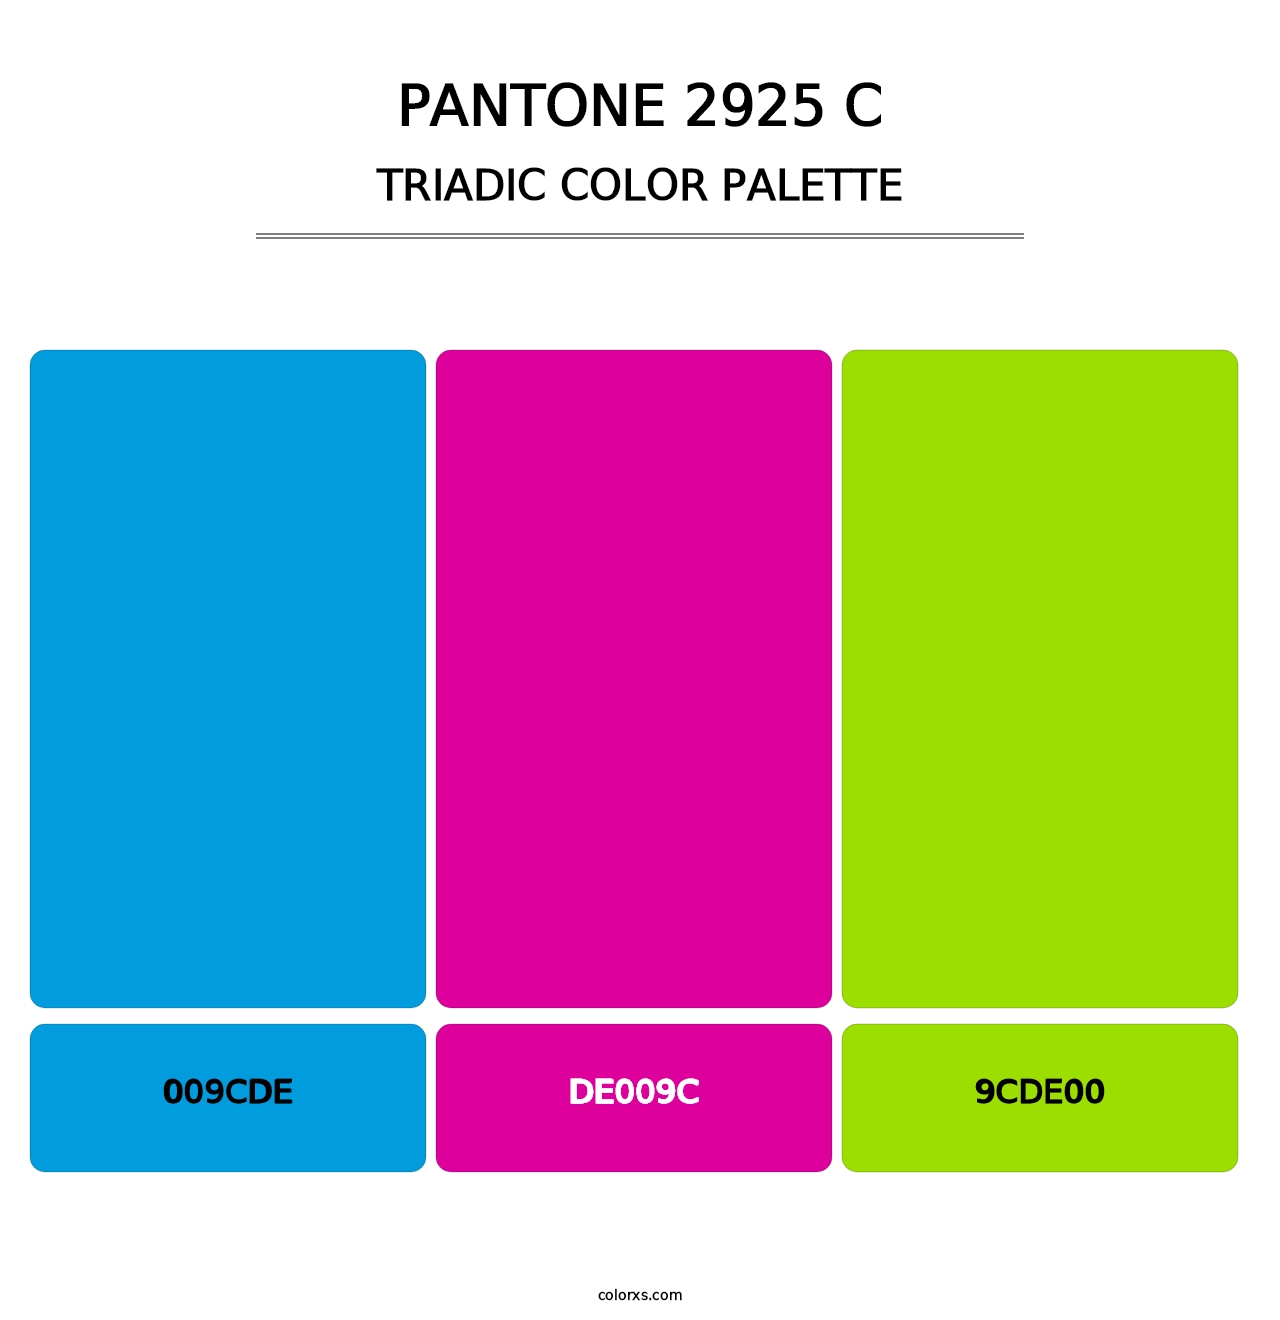 PANTONE 2925 C - Triadic Color Palette